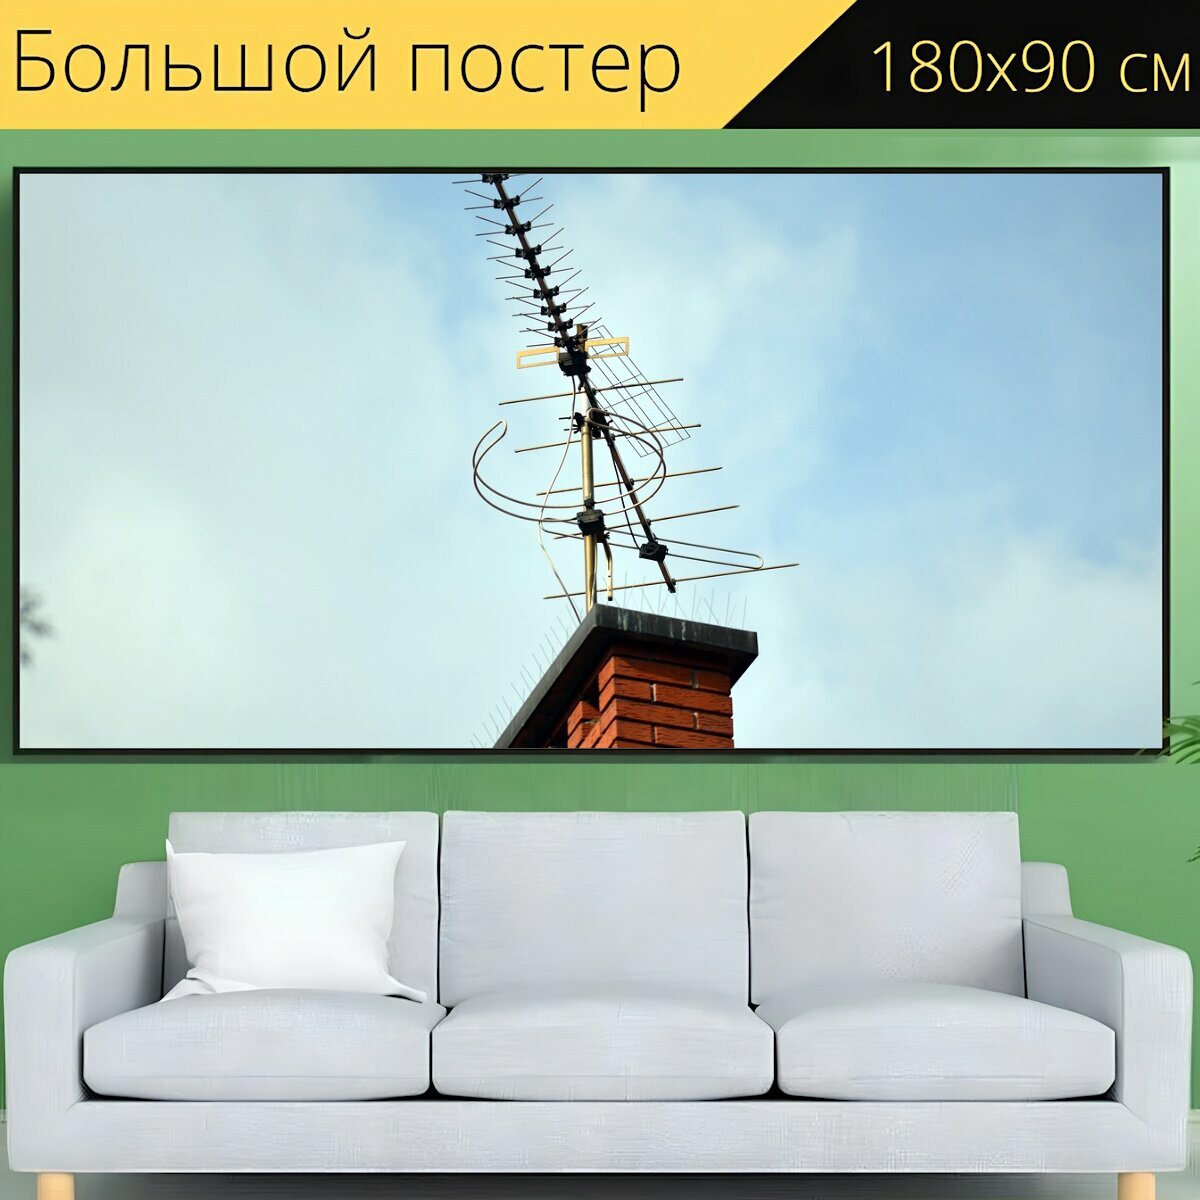 Большой постер "Антенна, антенны, телевидение" 180 x 90 см. для интерьера